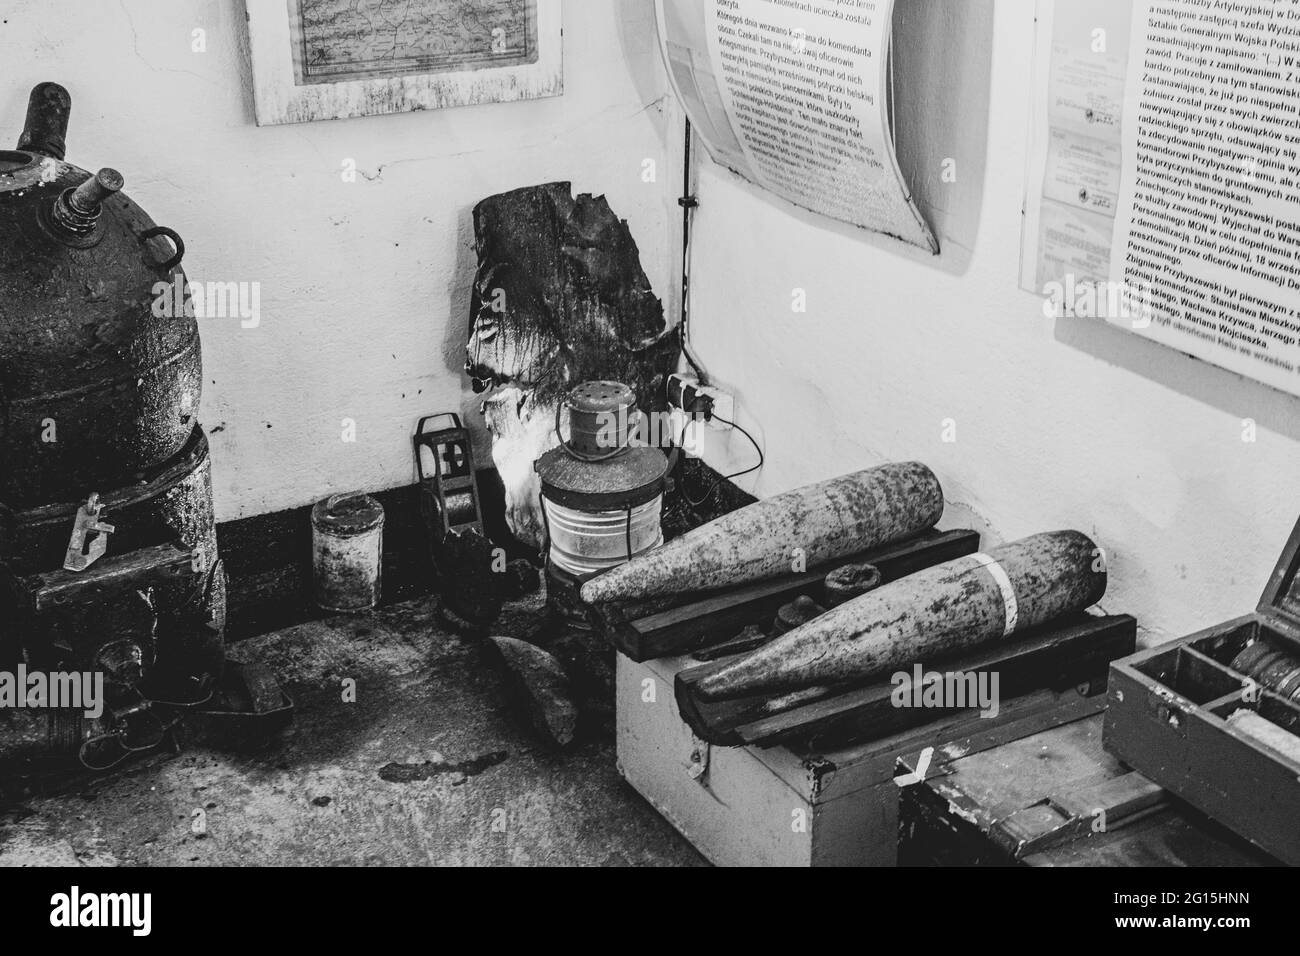 AK-47 Kalashnikov e granate si accodano nella foresta della penisola di Hel in Polonia. Girato dopo una doccia a pioggia in estate in un bunker. Foto Stock